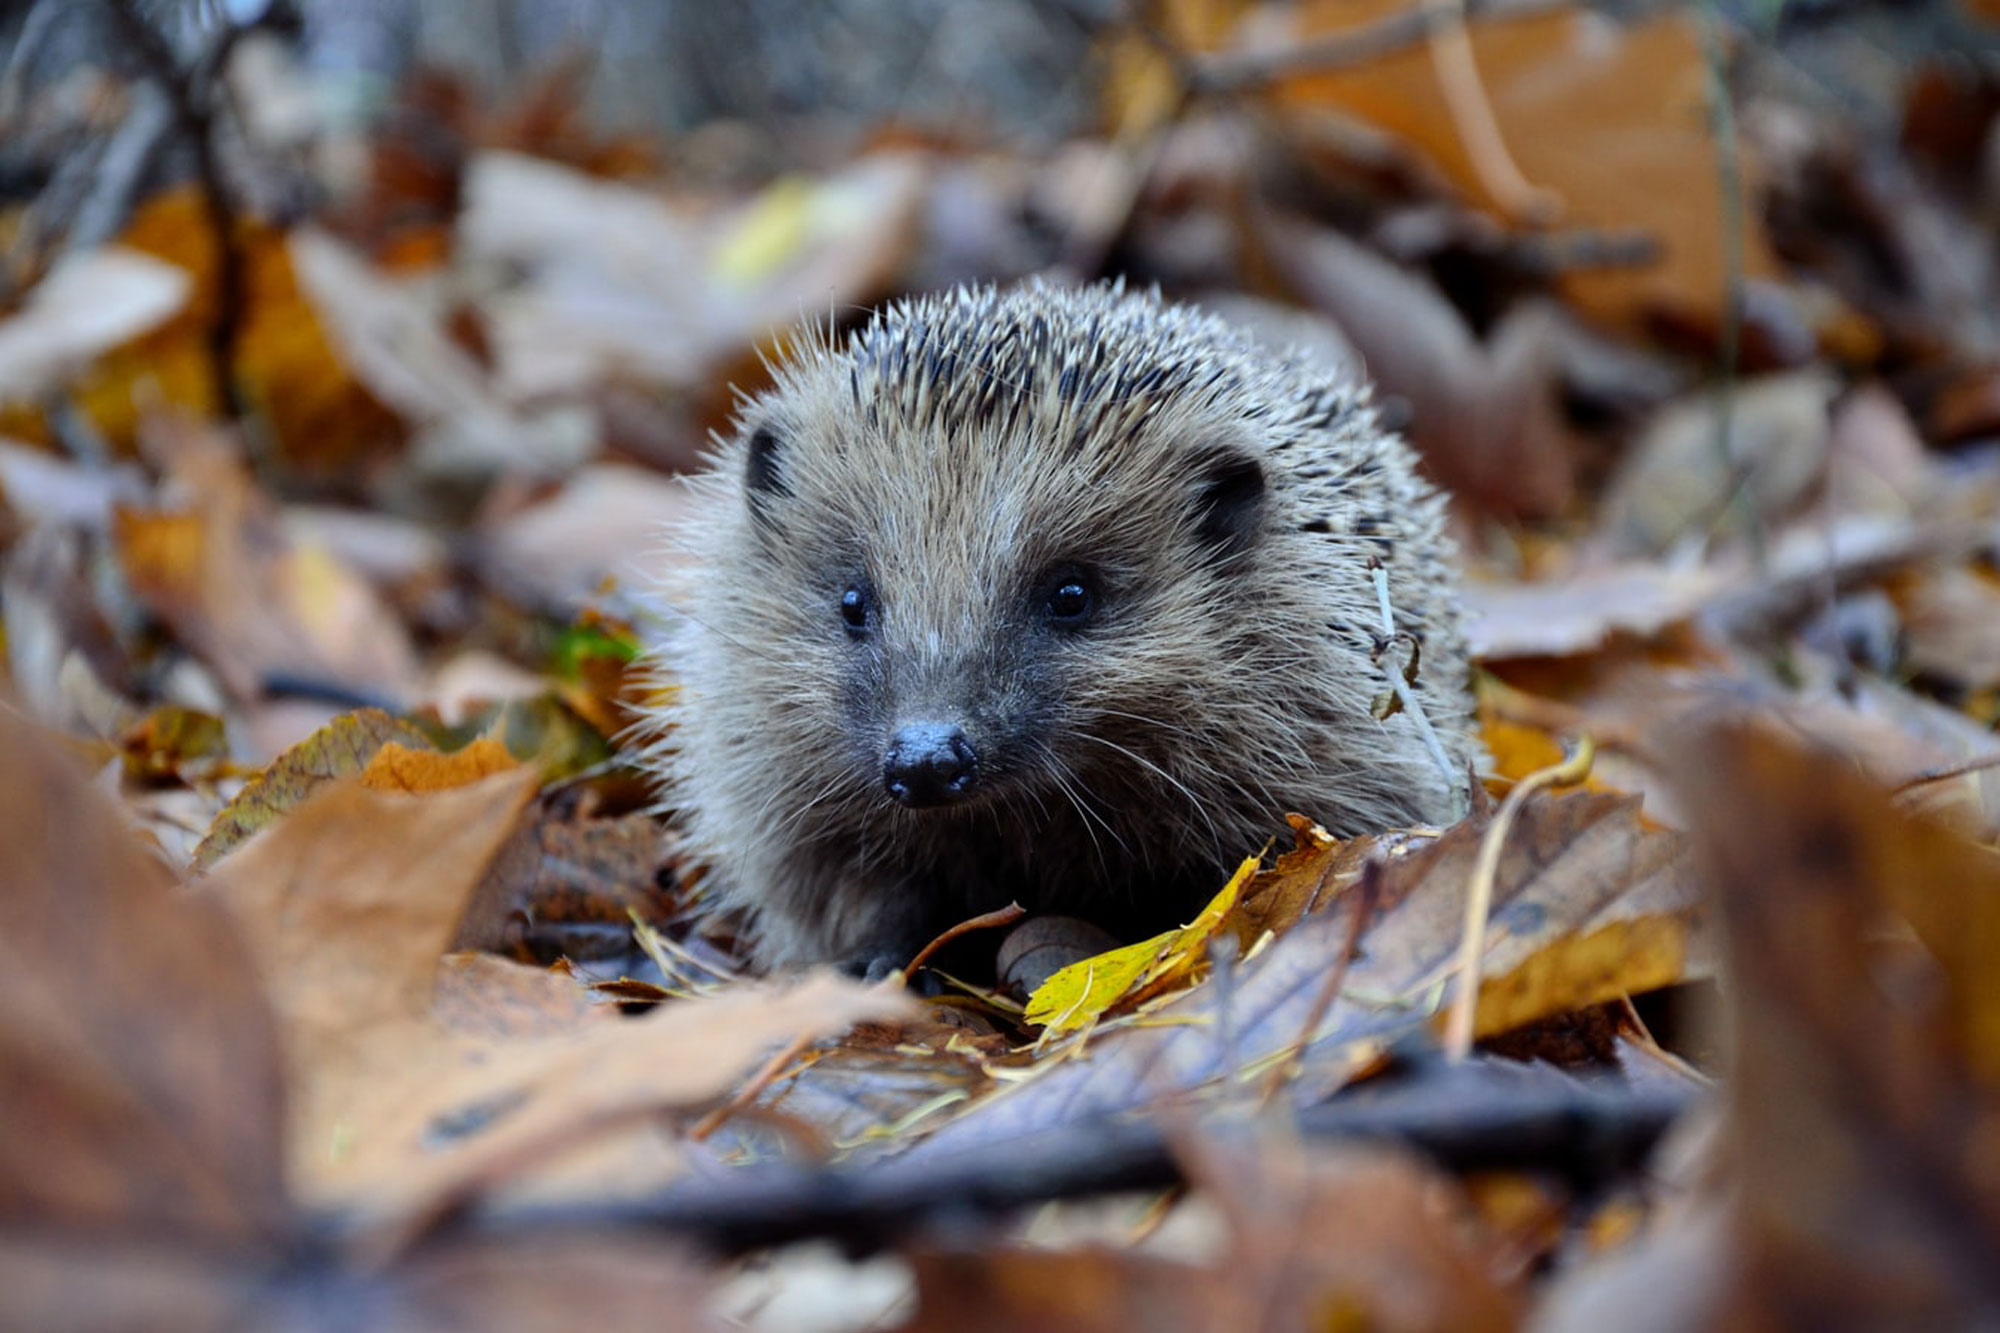 Hedgehog amidst autumn leaves